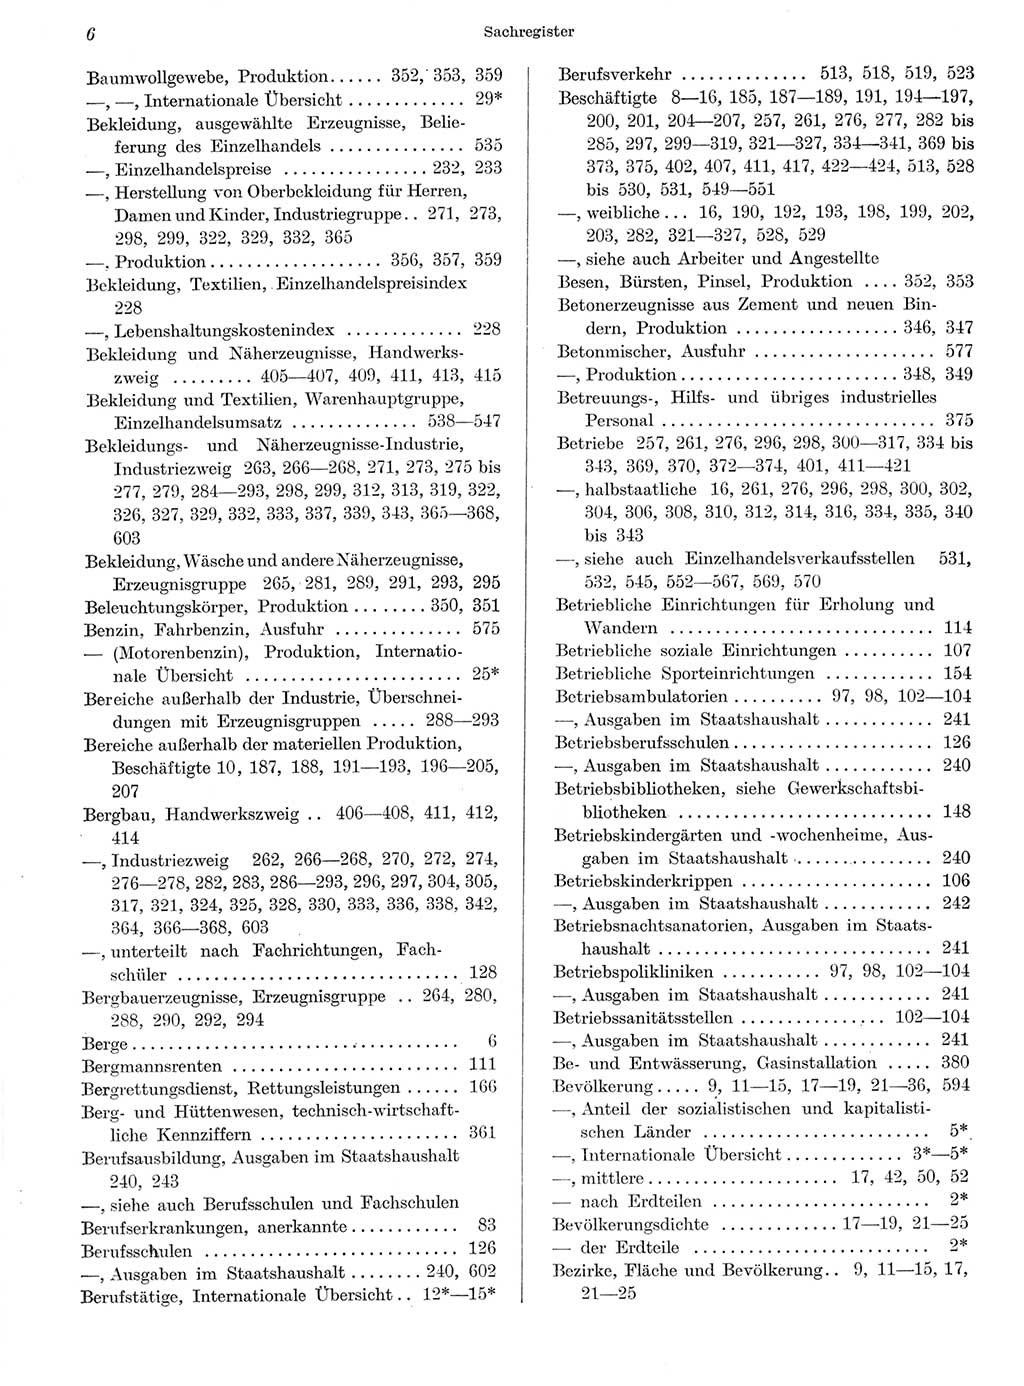 Statistisches Jahrbuch der Deutschen Demokratischen Republik (DDR) 1959, Seite 6 (Stat. Jb. DDR 1959, S. 6)